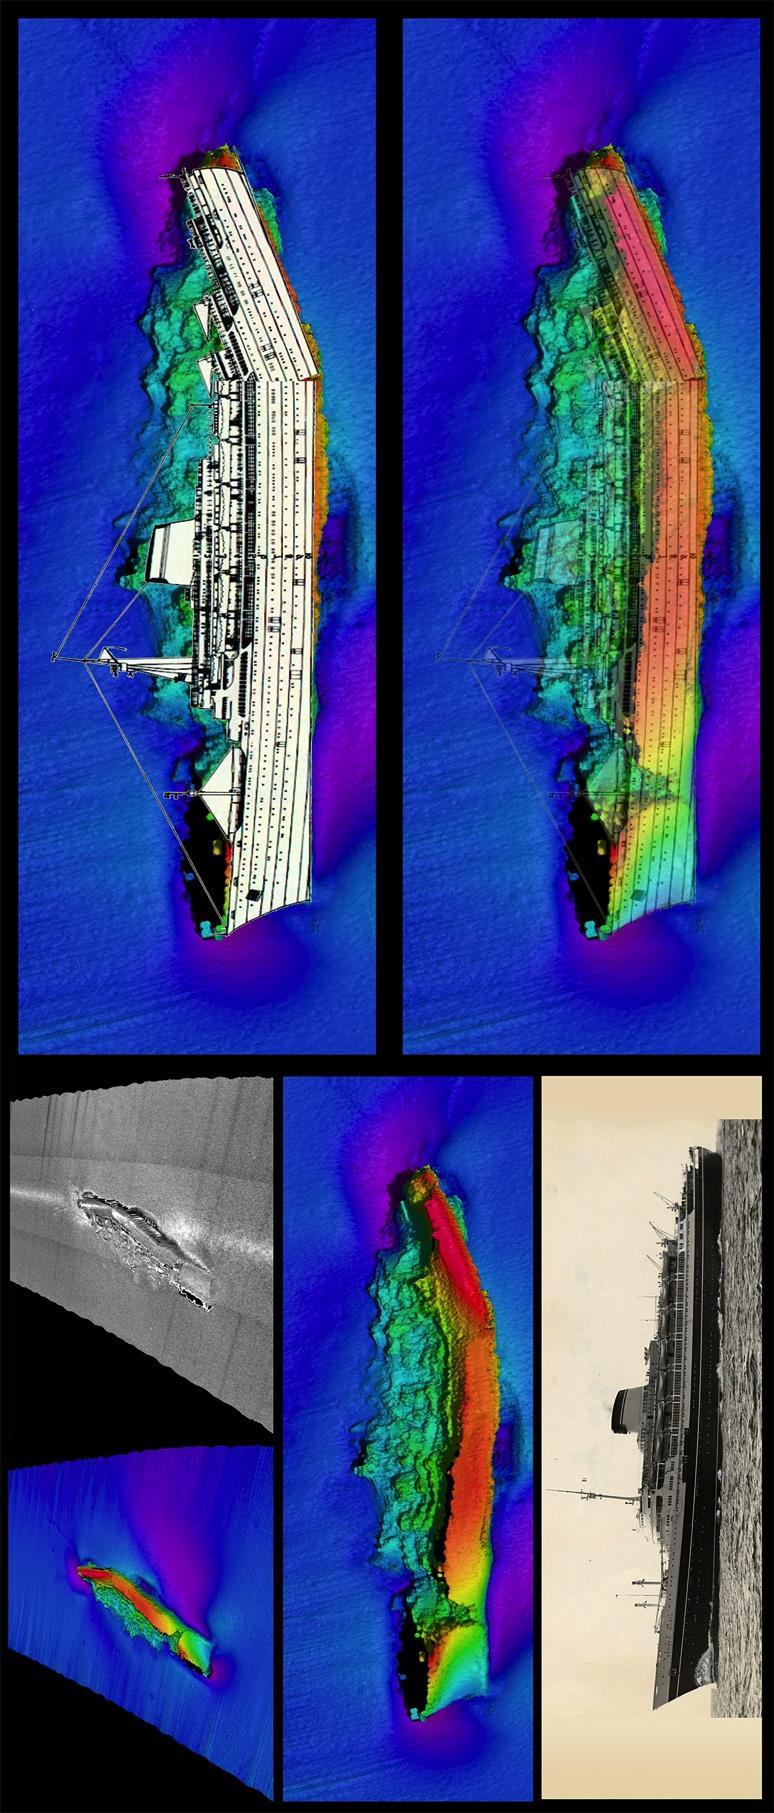 Appendix J SS Andrea Doria Images